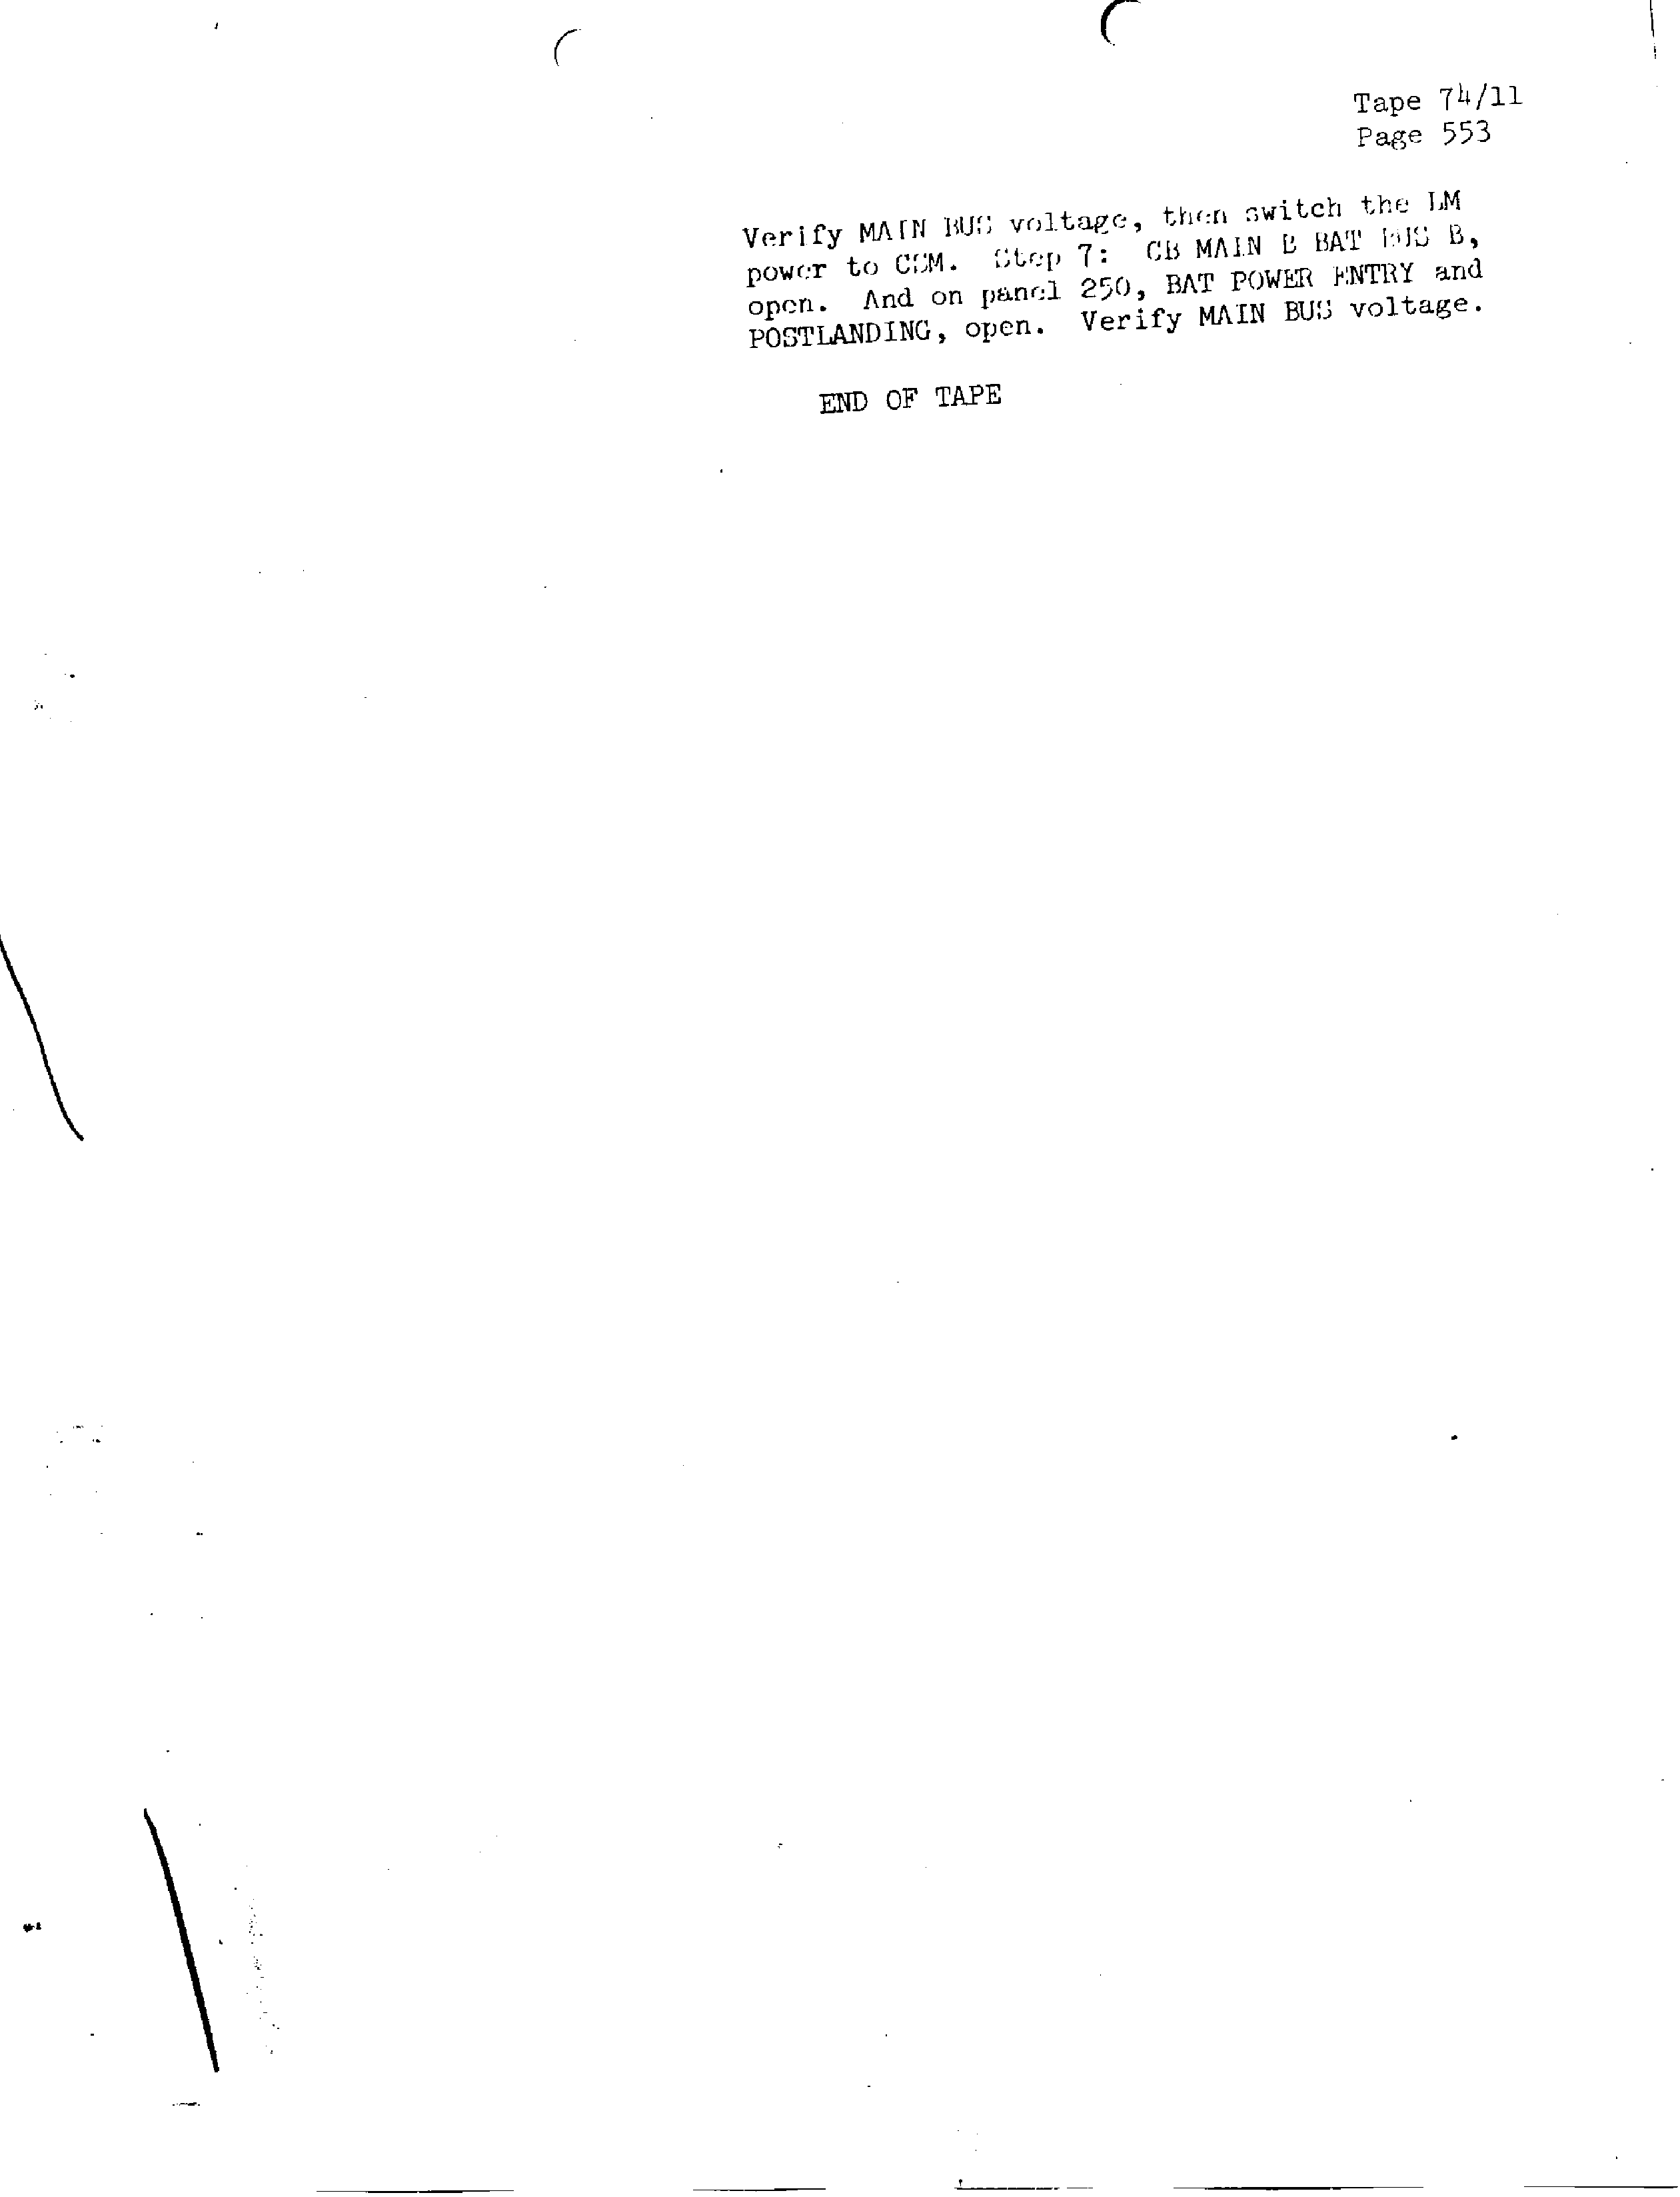 Page 560 of Apollo 13’s original transcript